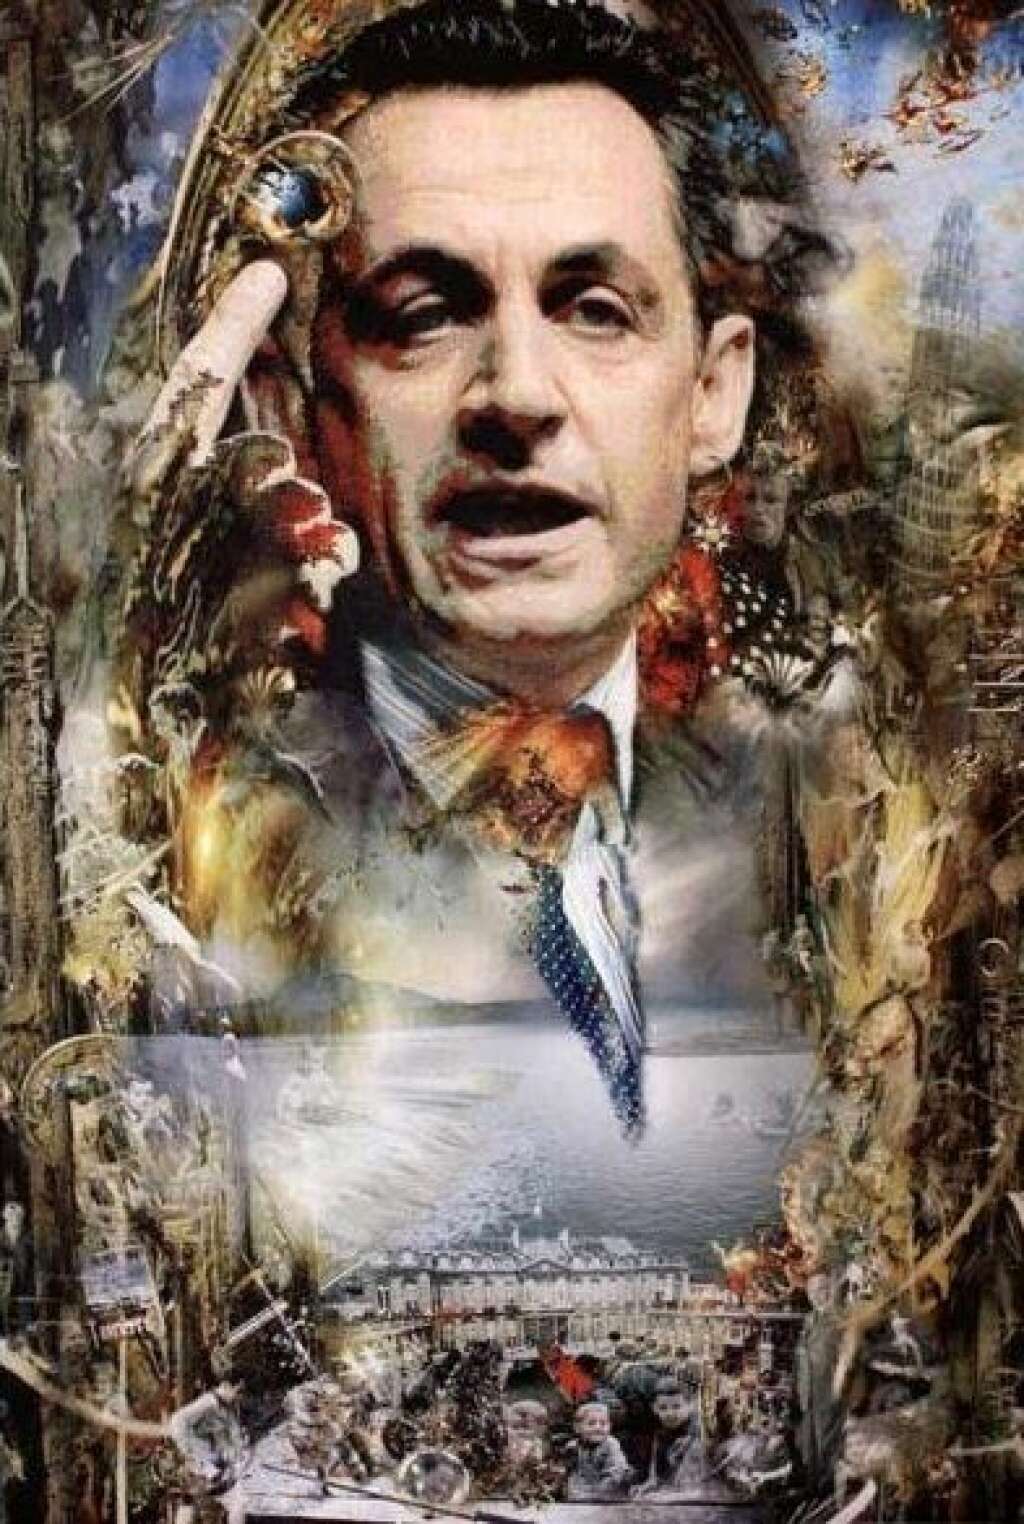 Le tableau du père de Nicolas Sarkozy - C'est <a href="http://www.france24.com/fr/20100210-le-p-re-nicolas-sarkozy-expose-uvres-budapest" target="_blank">l'une des oeuvres de Pal Sarkozy</a>, le père de l'ancien président.